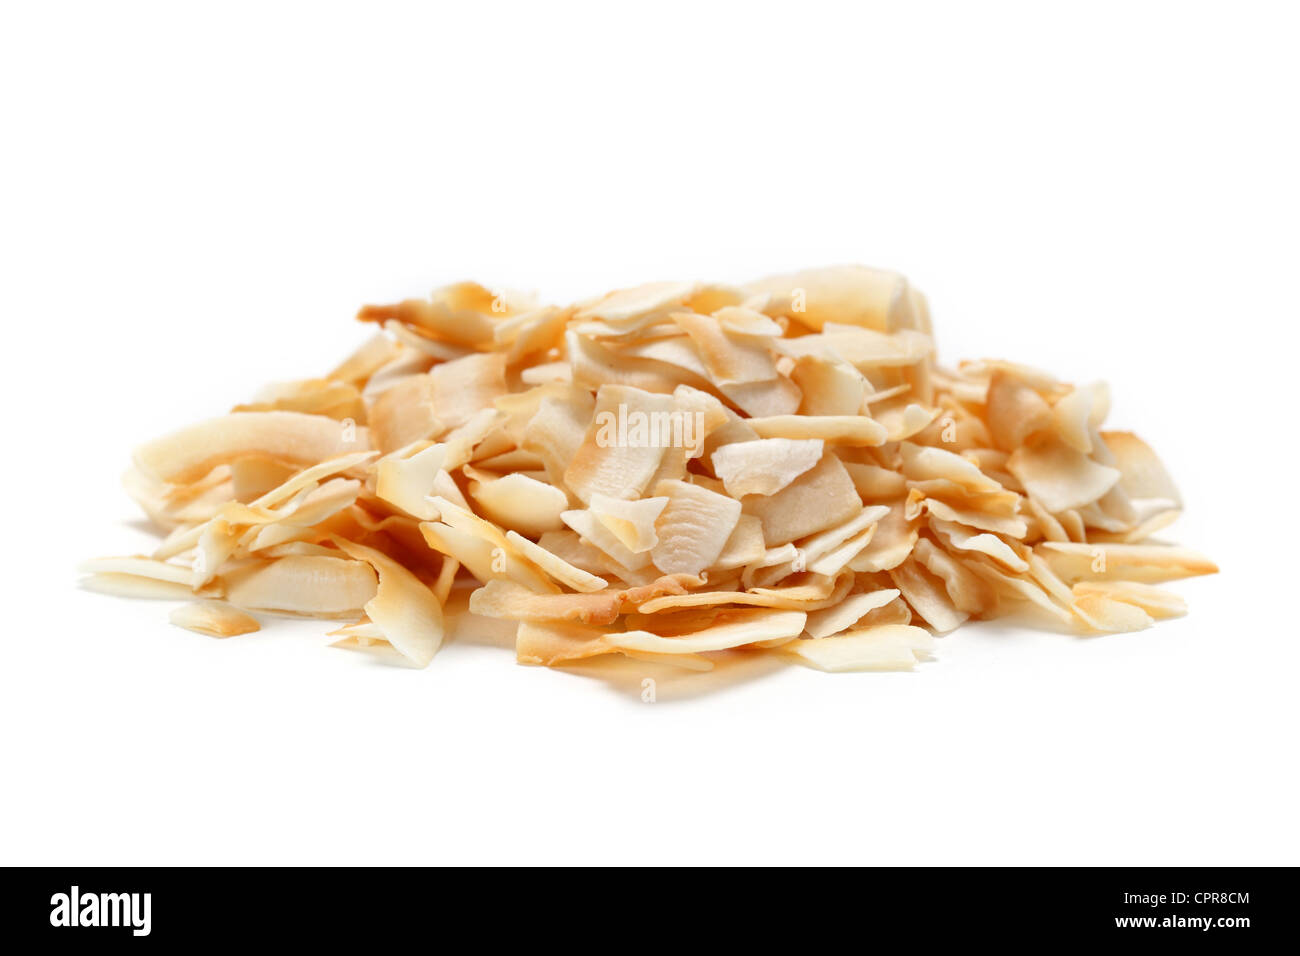 Pila a secco tritata di fiocchi di cocco Foto Stock